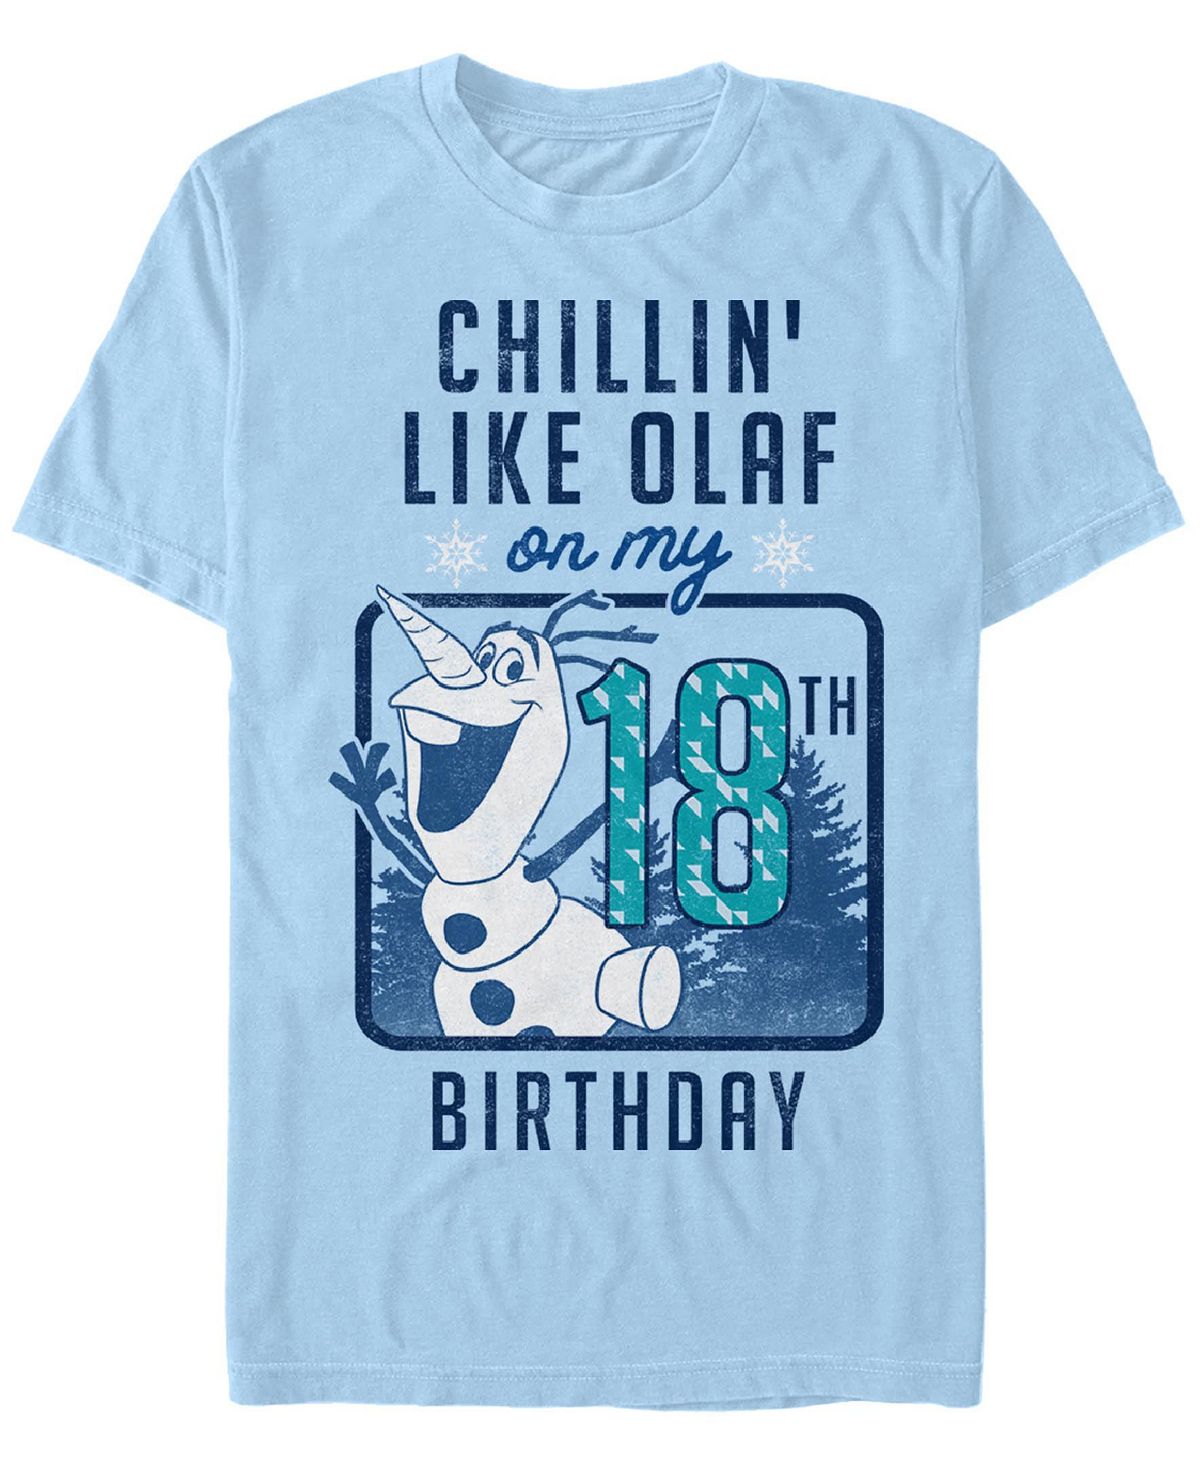 Мужская футболка с круглым вырезом и короткими рукавами olaf birthday 18 Fifth Sun, светло-синий